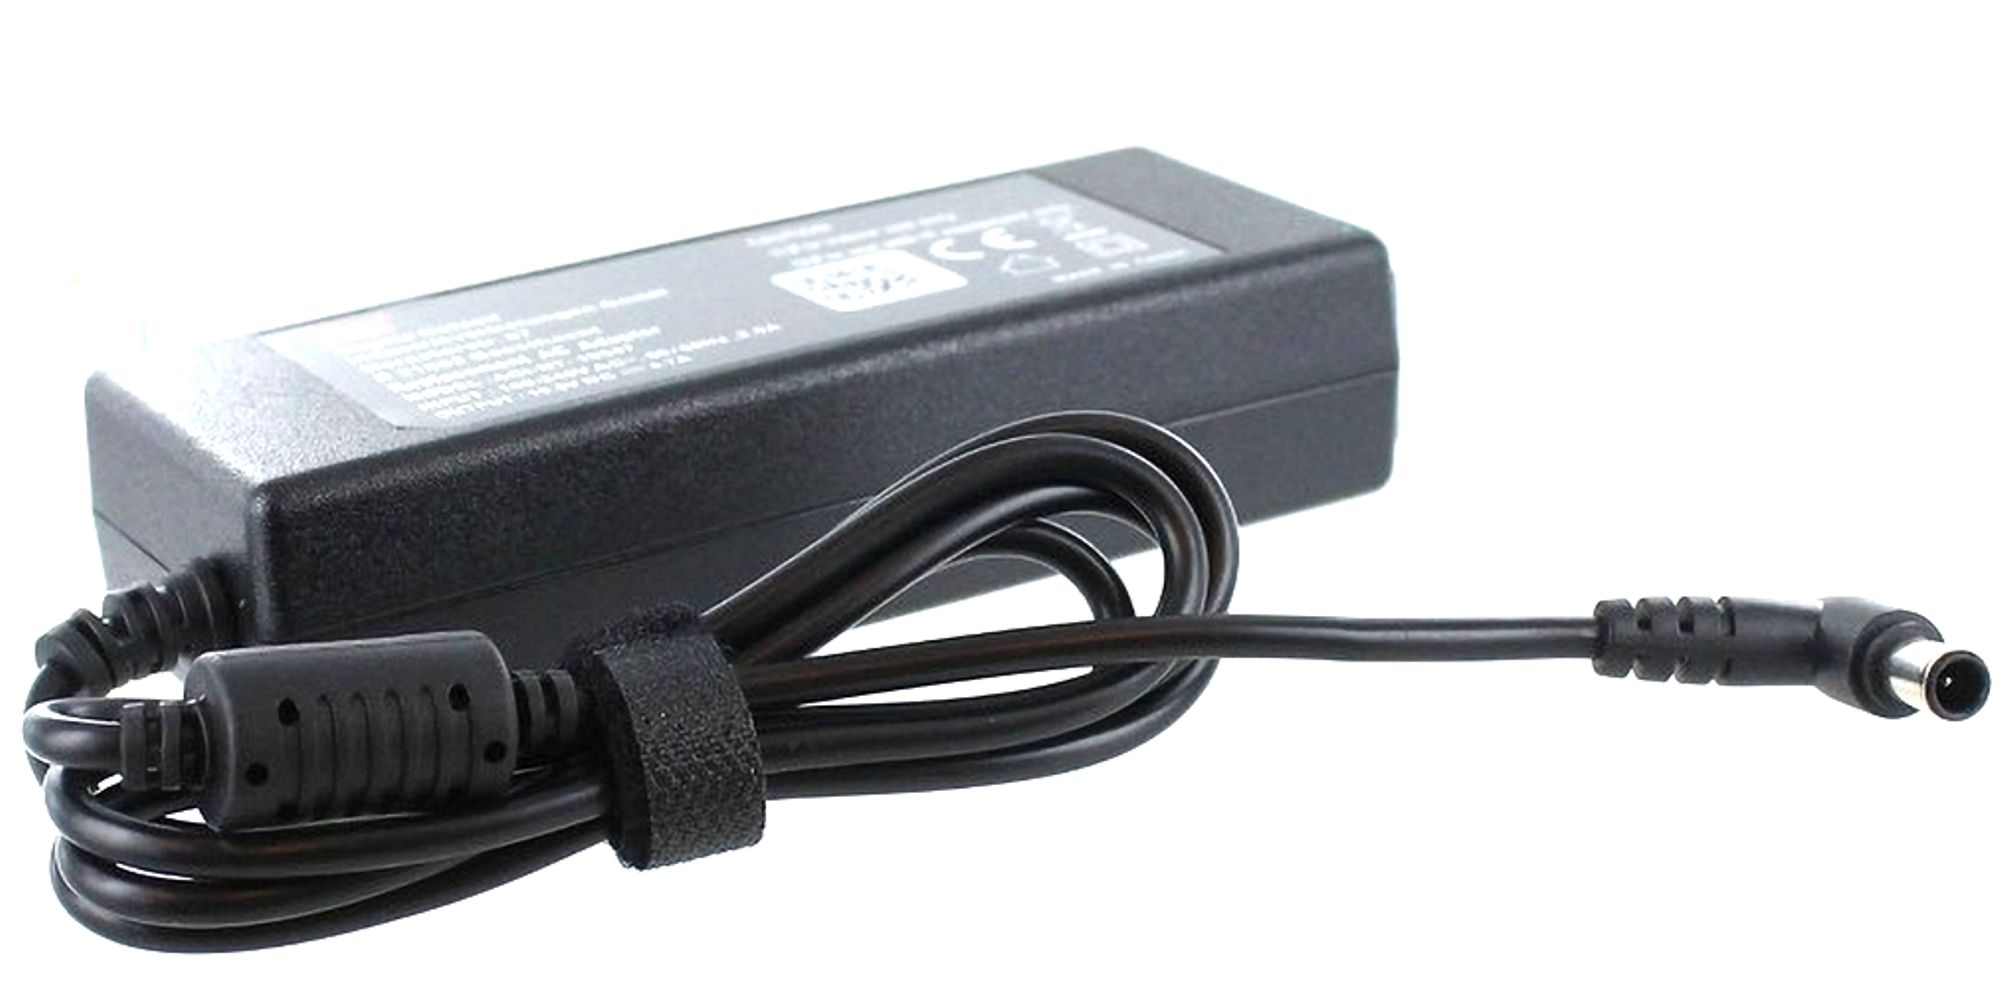 VGP-AC19V33 Sony MOBILOTEC Netzteil Netzteil/Ladegerät mit Vaio kompatibel